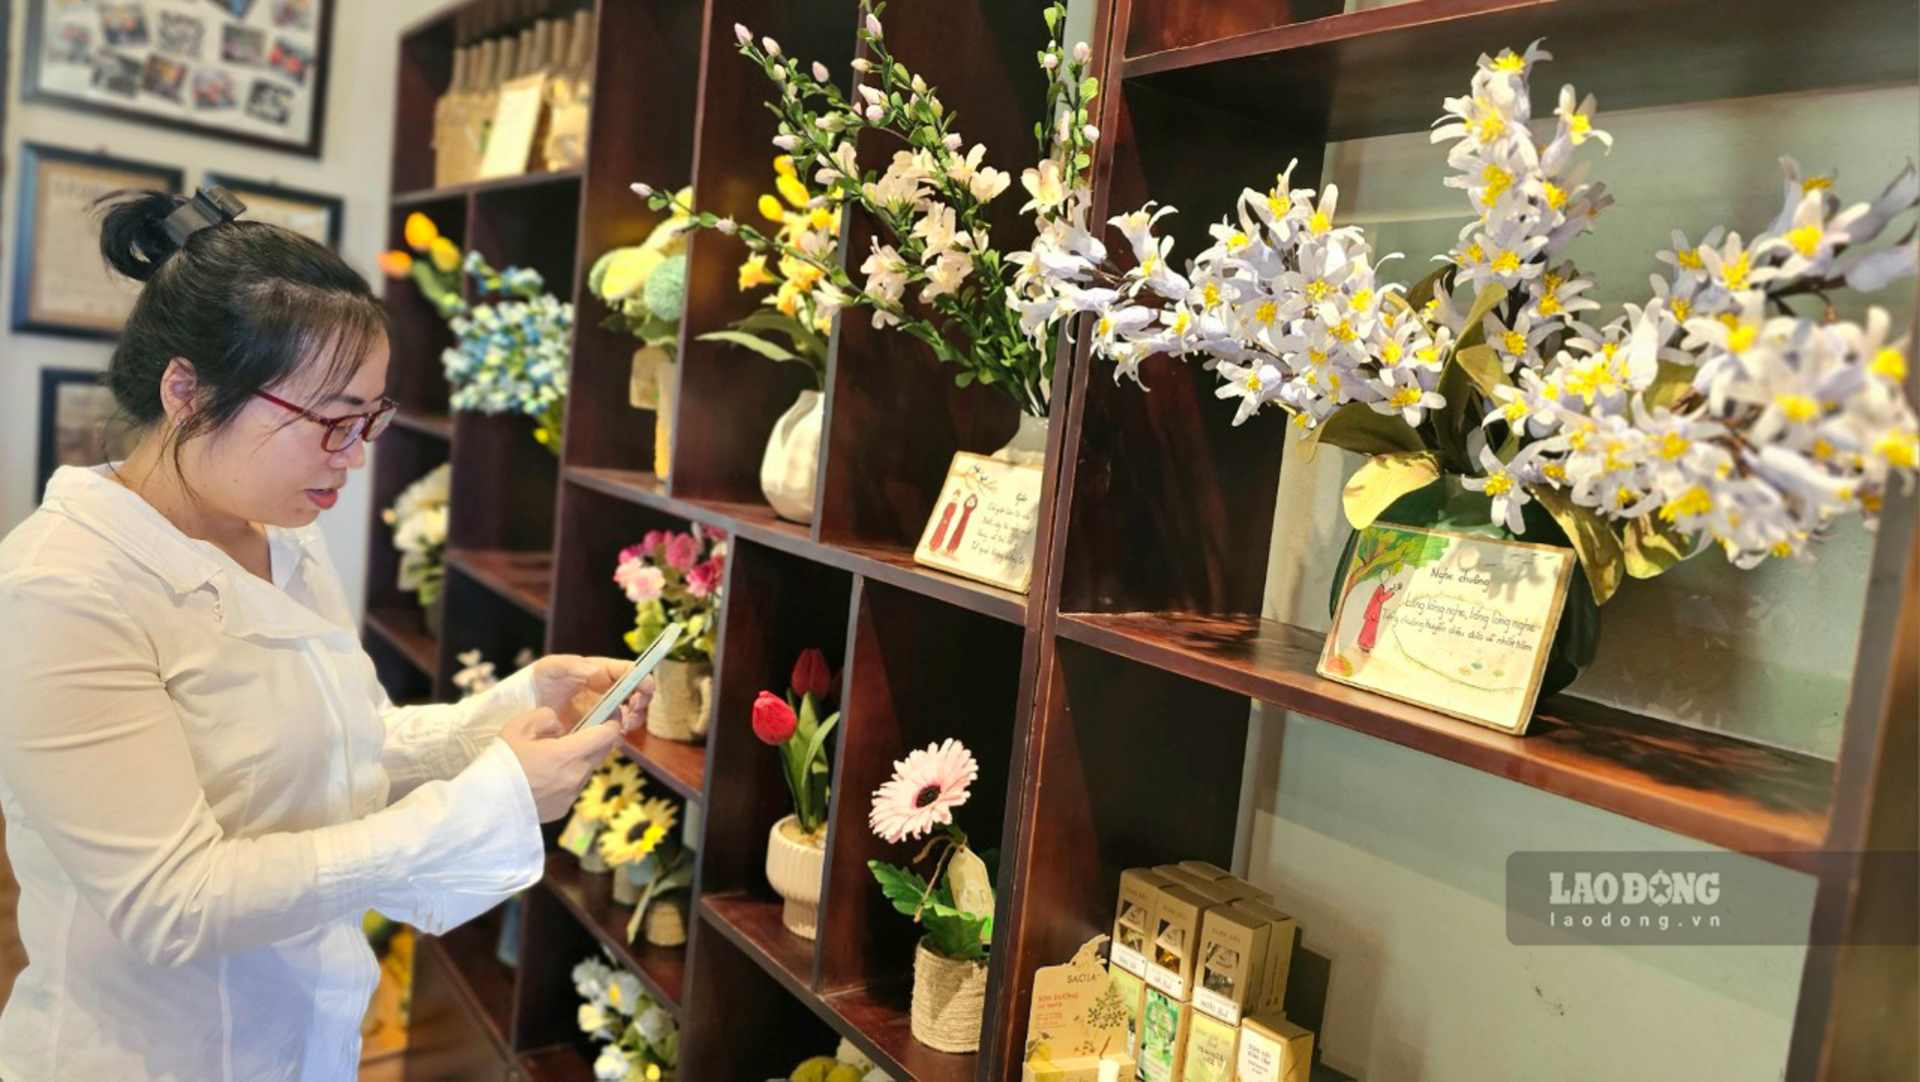 Các sản phẩm hoa giấy được làm thủ công bởi những cô gái trẻ khuyết tật. Ảnh: Thành Trung.